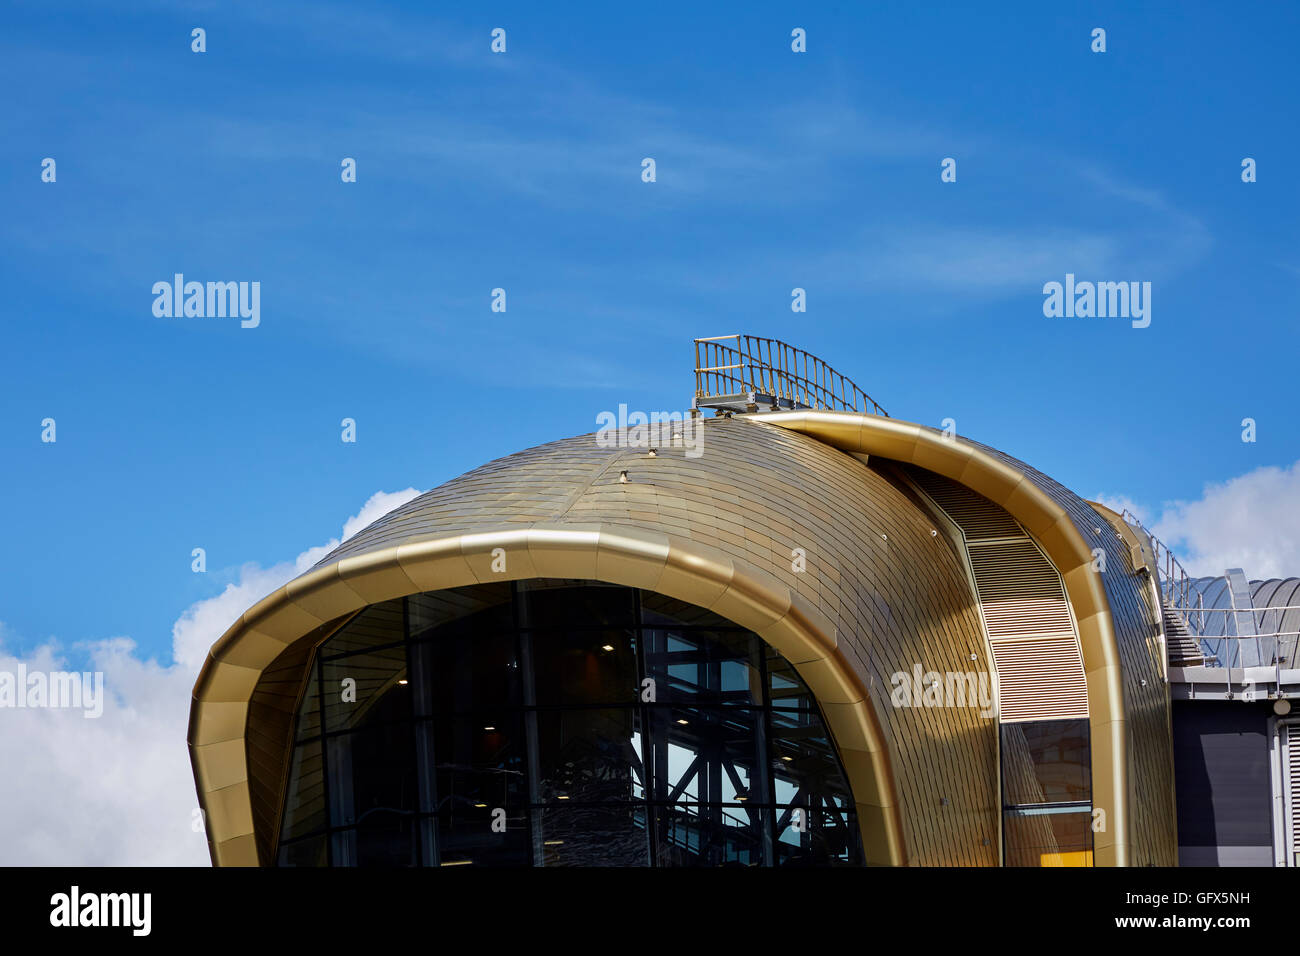 Bahnhof Leeds Eingang Süd Dach der goldfarbene, eloxierte Leichtmetallegierung Schindeln und Kurven von ikonischen Gebäude. Kopieren Sie Platz für Text Stockfoto